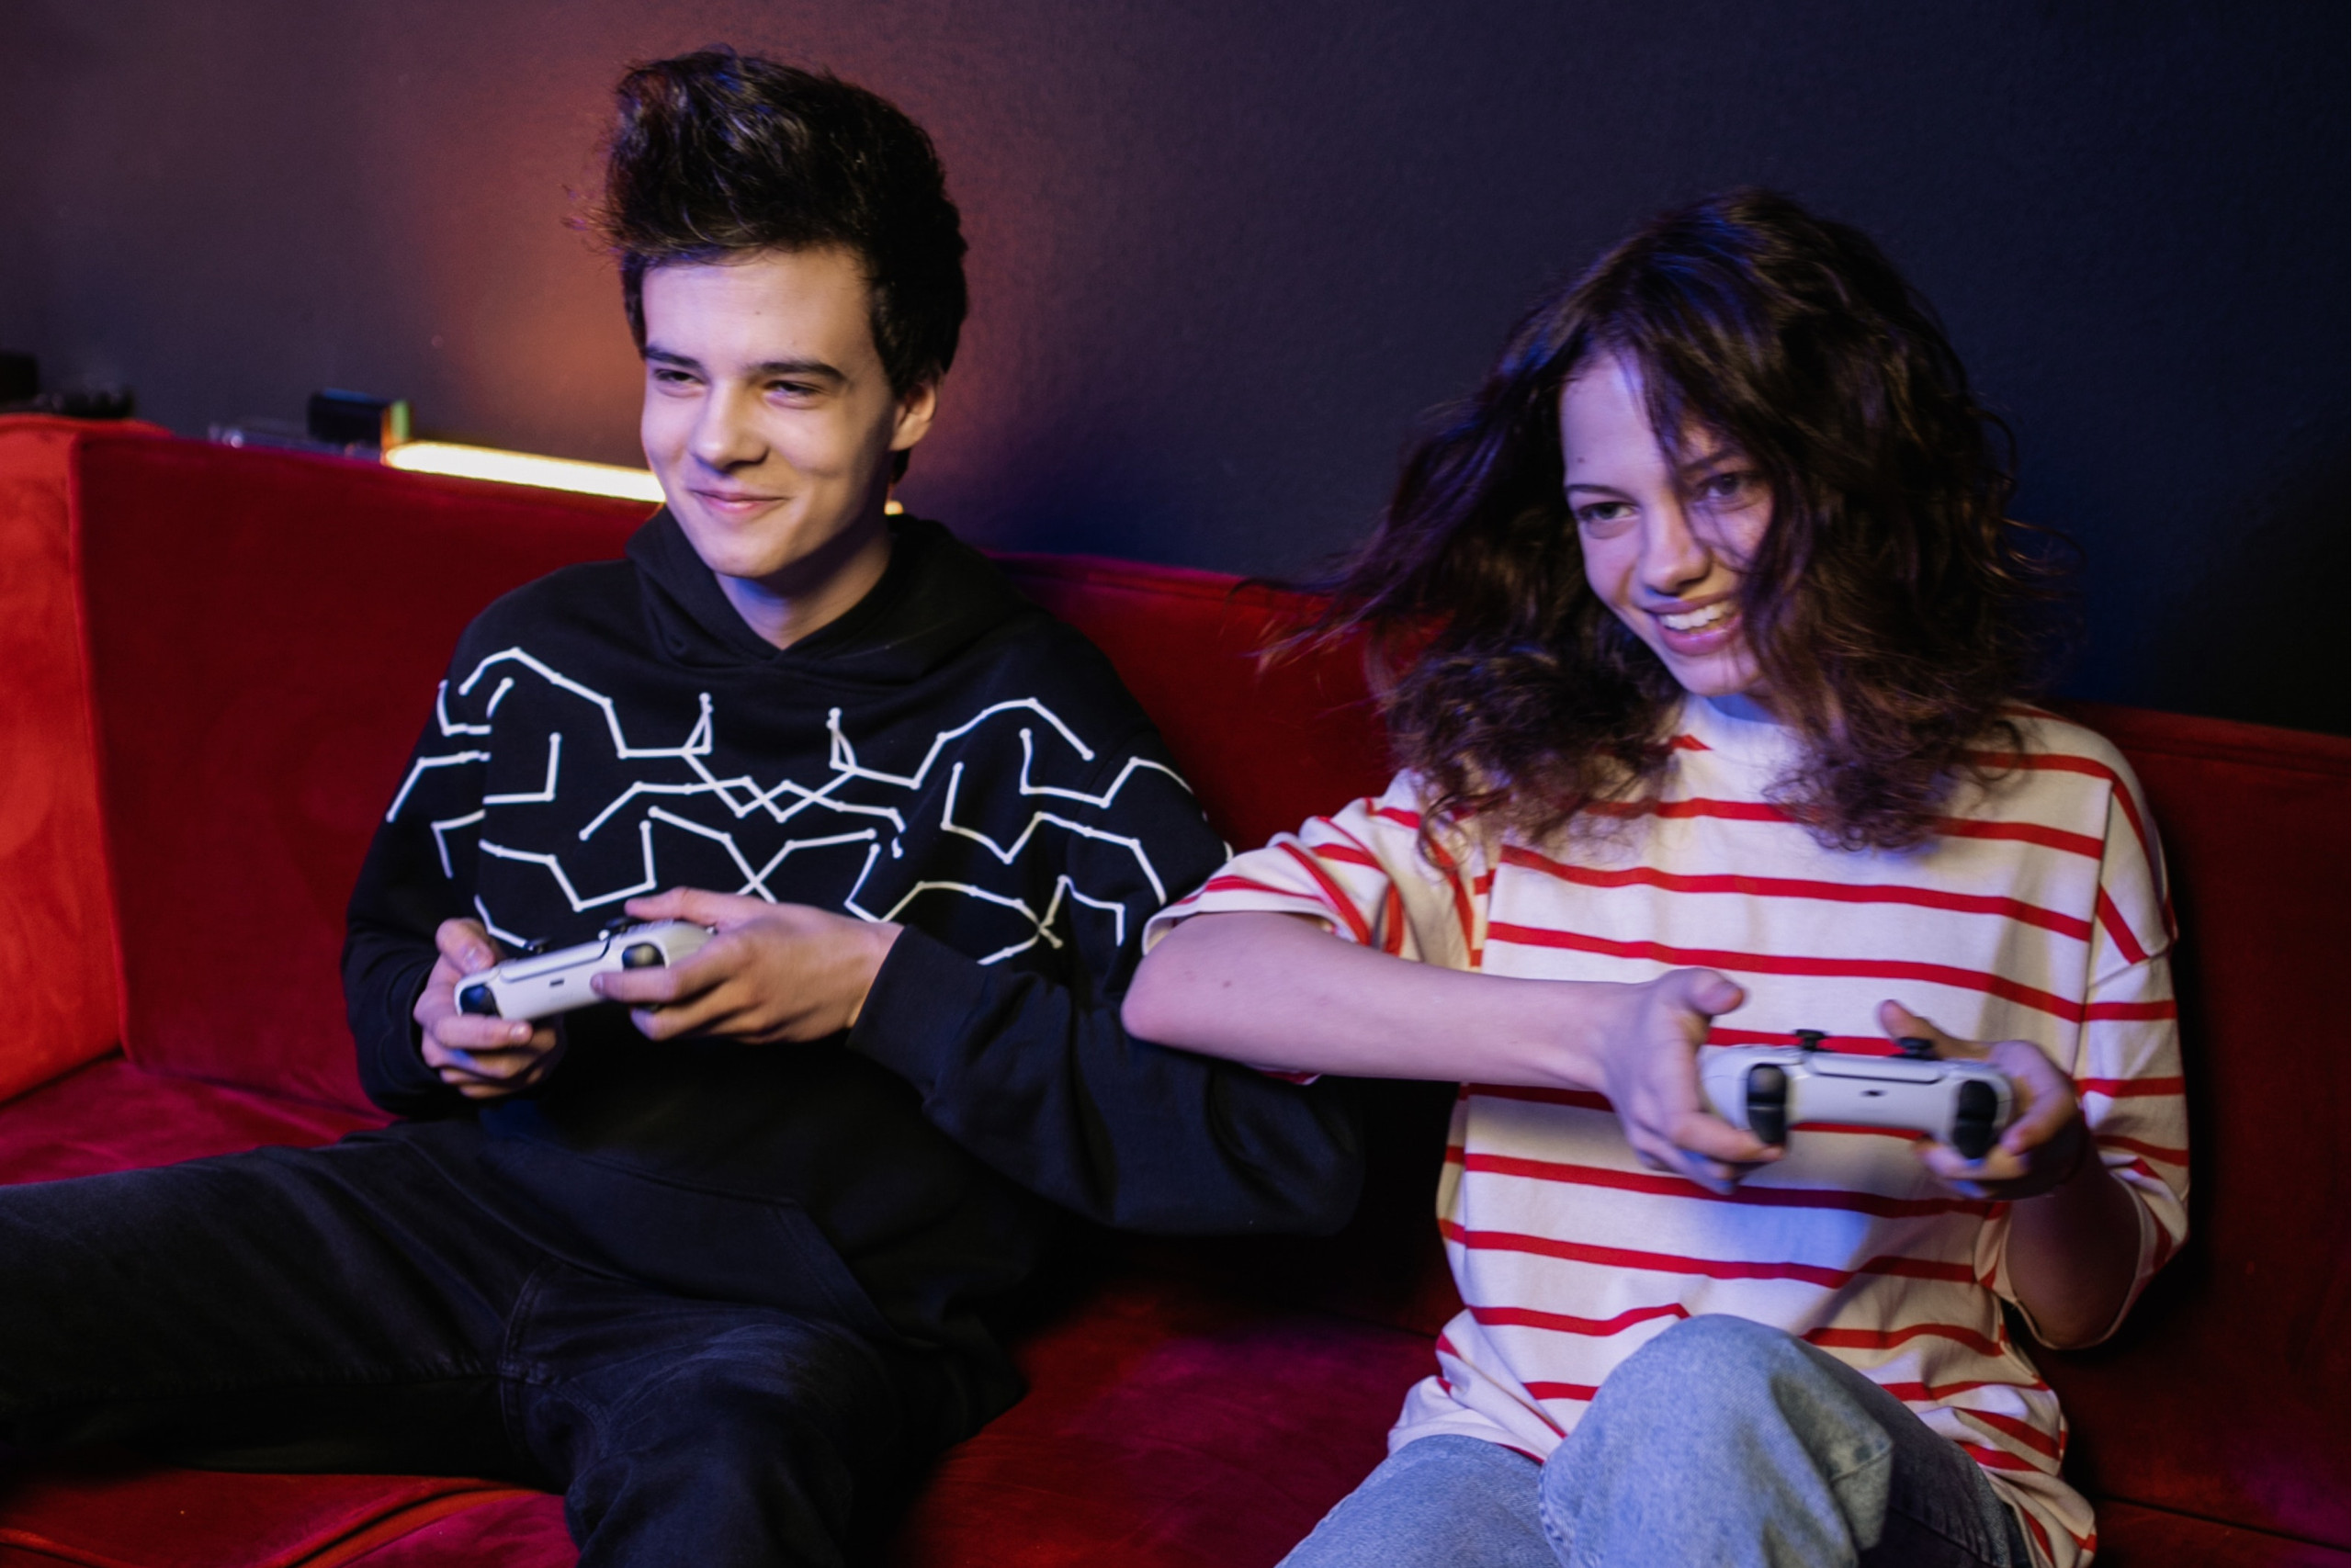 Ein Junge und ein Mädchen spielen gemeinsam Videospiele.